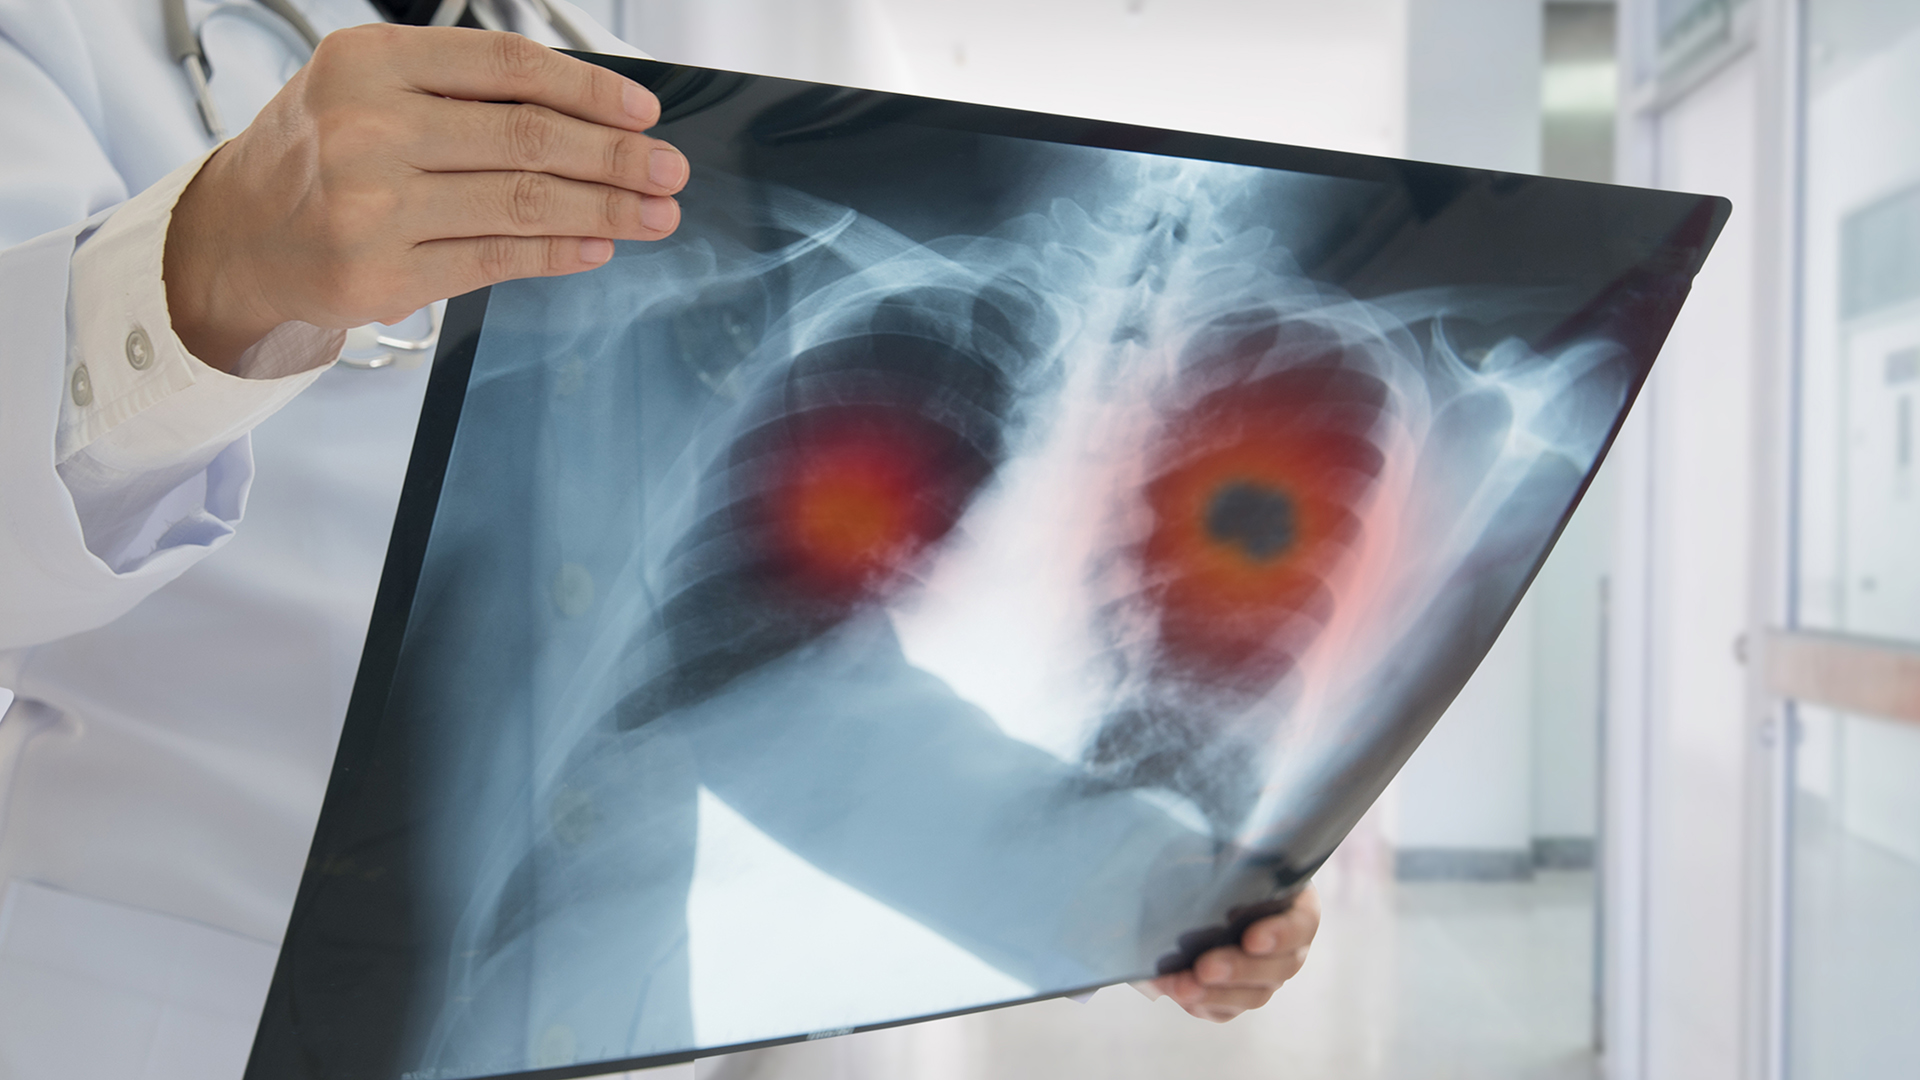 El cáncer de pulmón sigue siendo uno de los principales, tanto en incidencia como en muertes.